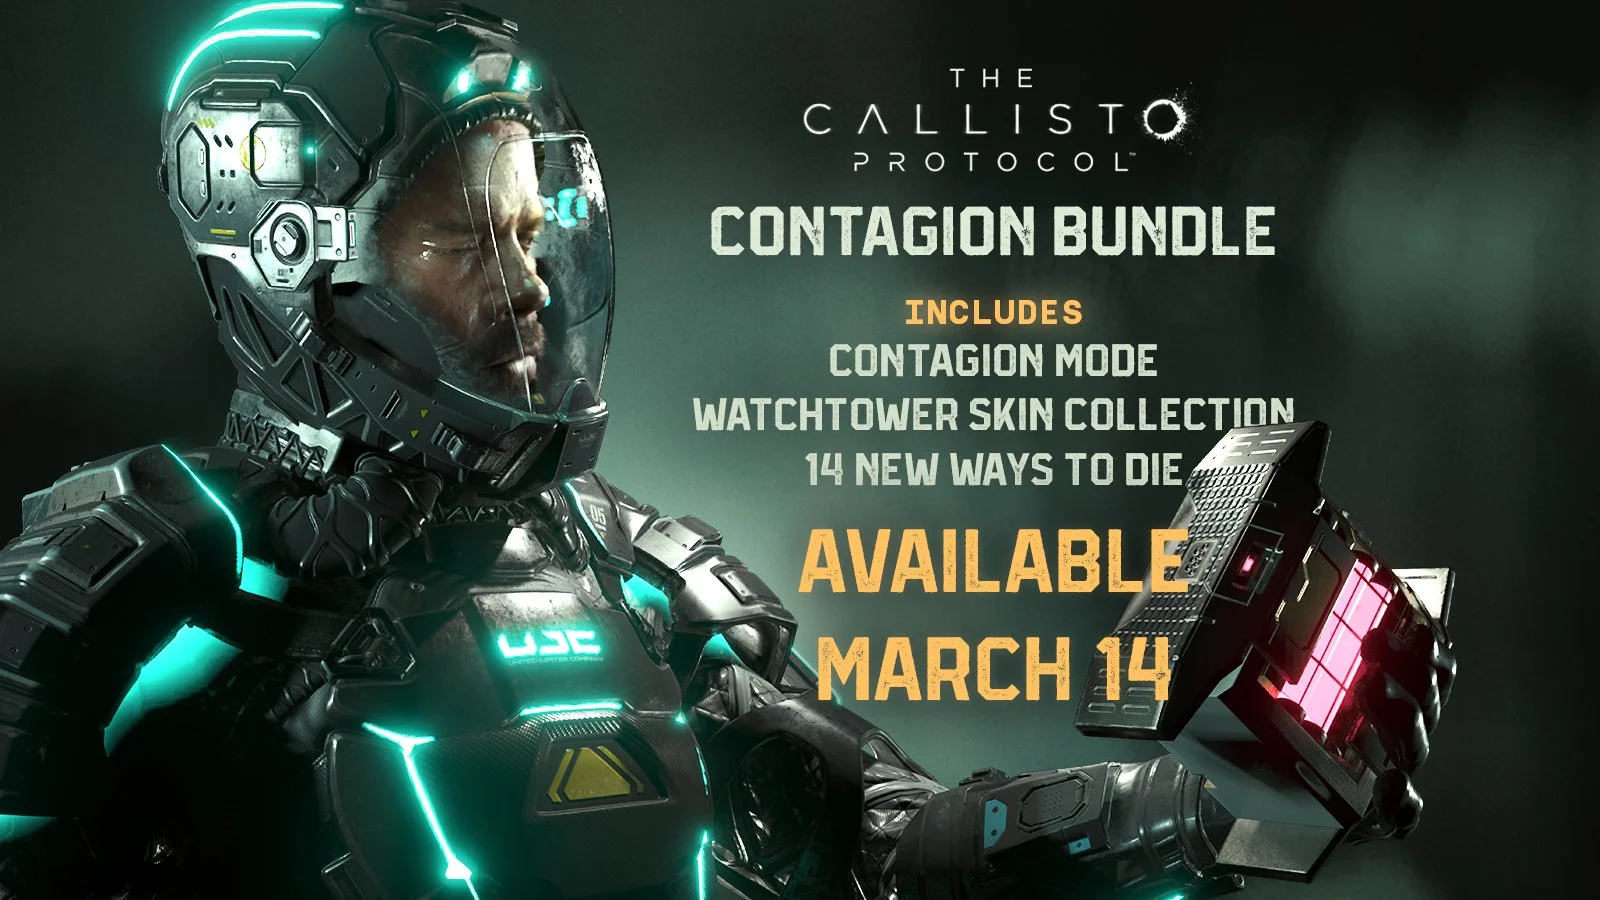 Бандл Contagion для The Callisto Protocol выйдет 14 марта - фото 1